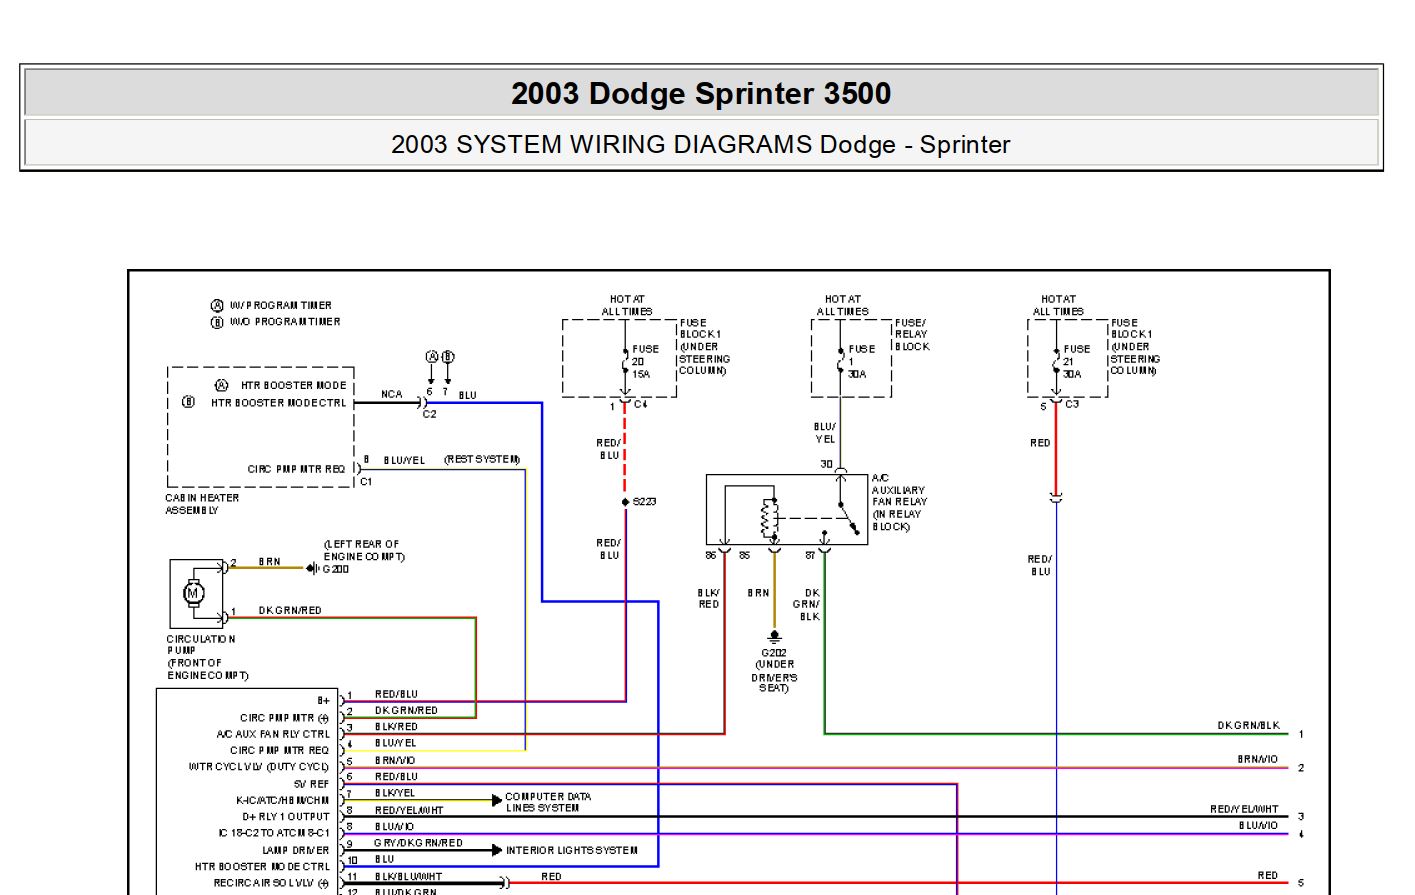 Dodge Sprinter 3500 2003 System Wiring